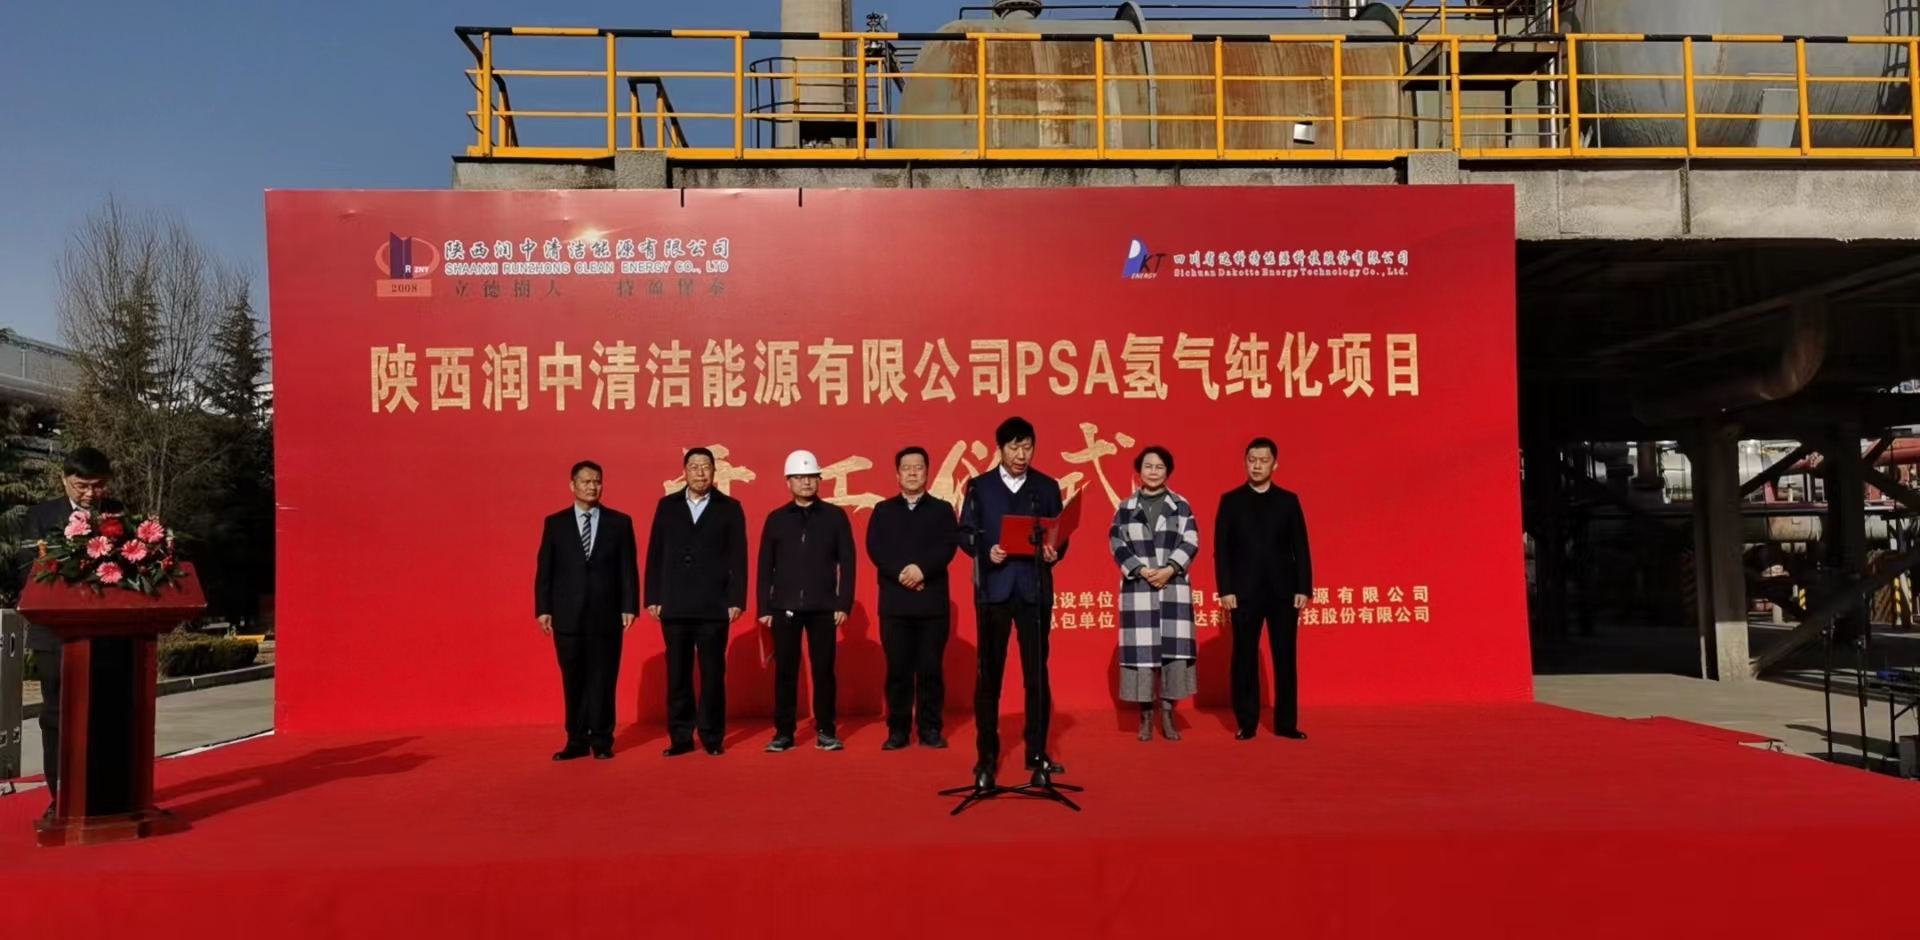 祝賀陜西潤中—PSA氫氣純化EPC項目開工儀式圓滿成功